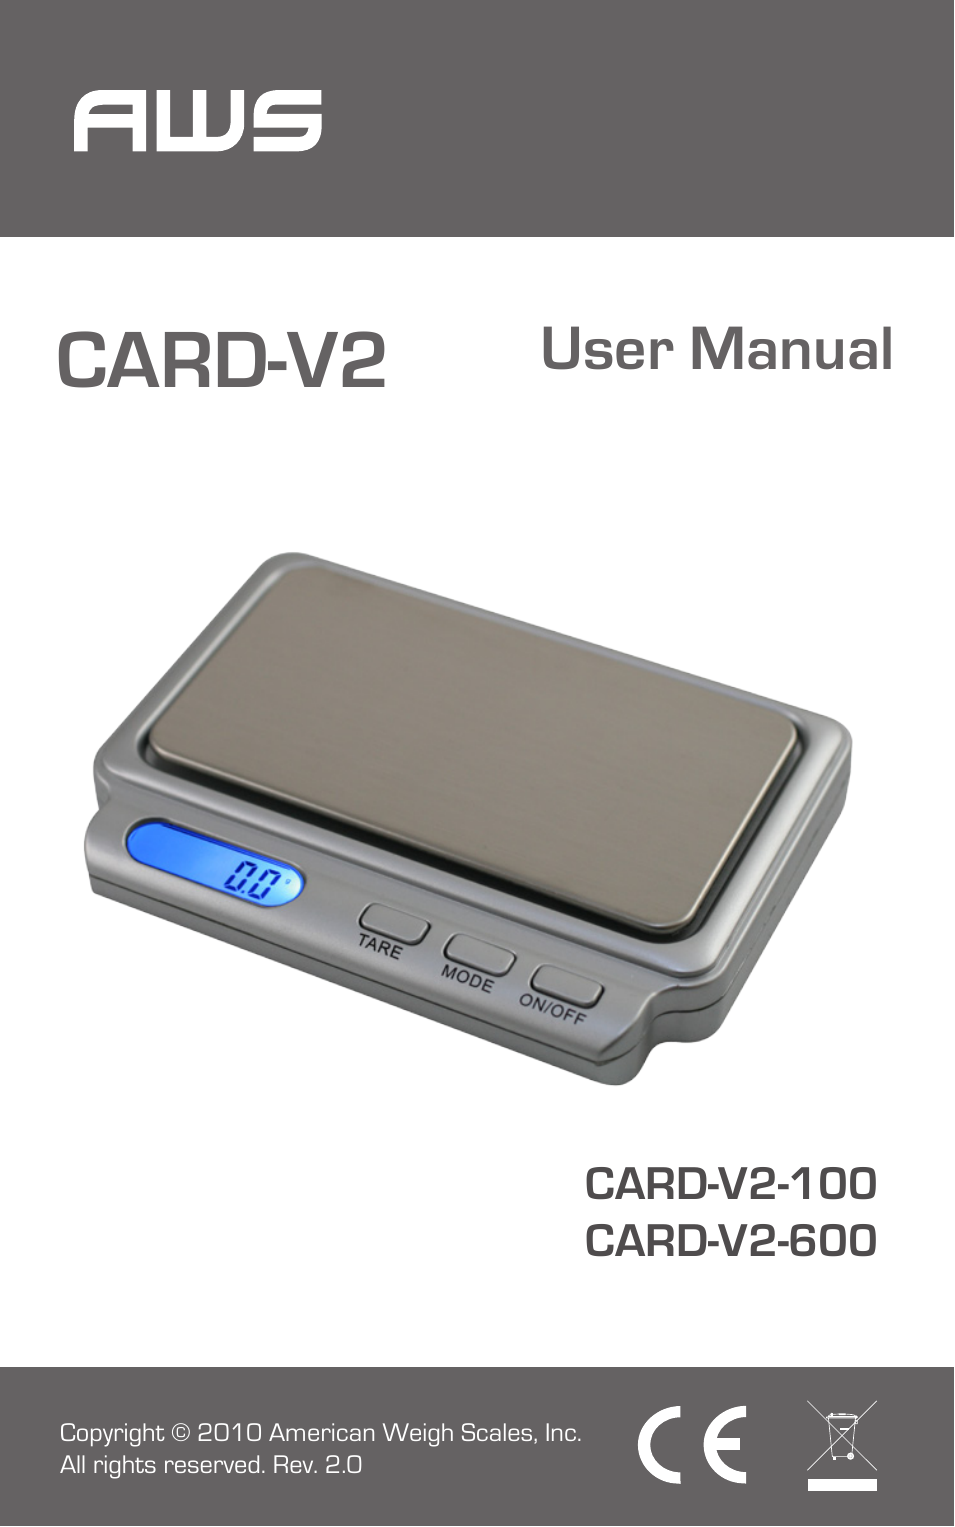 Card-V2-600